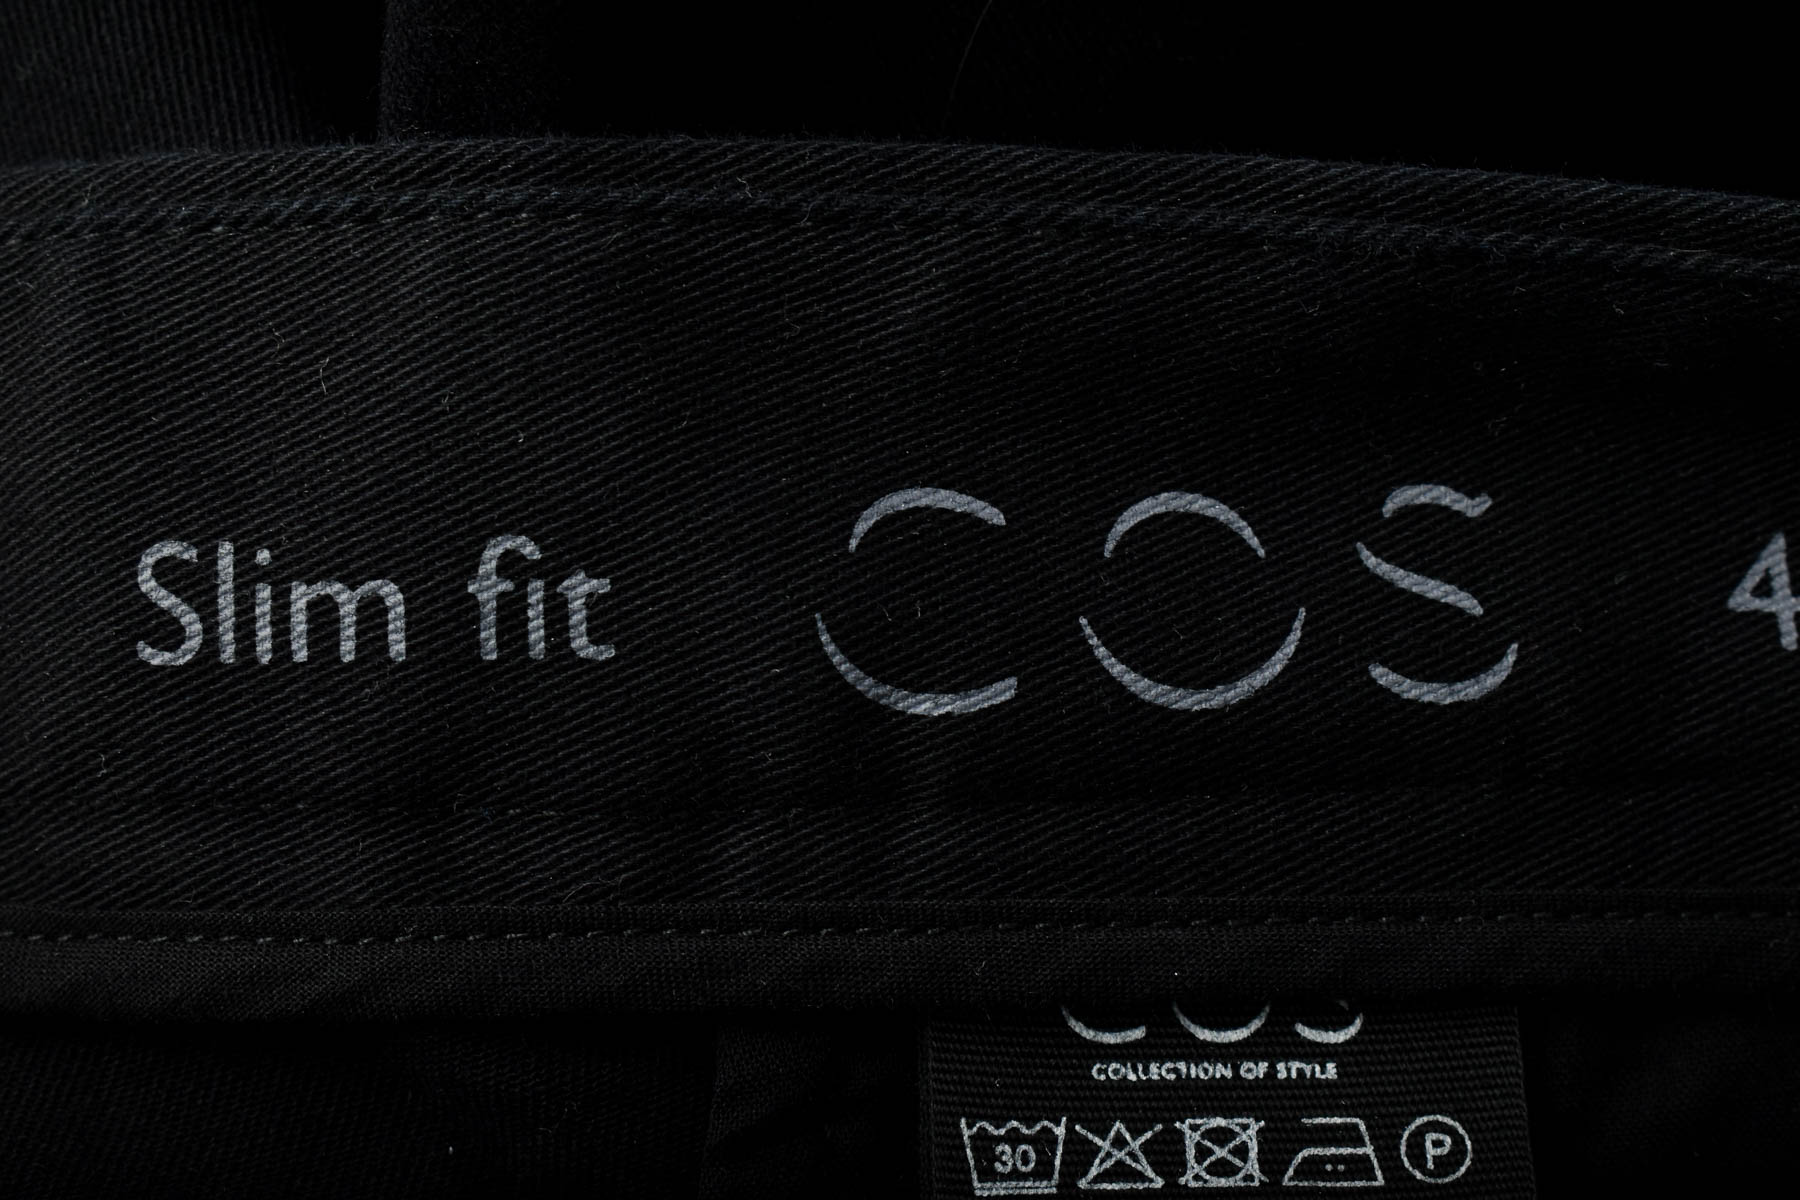 Men's trousers - COS - 2